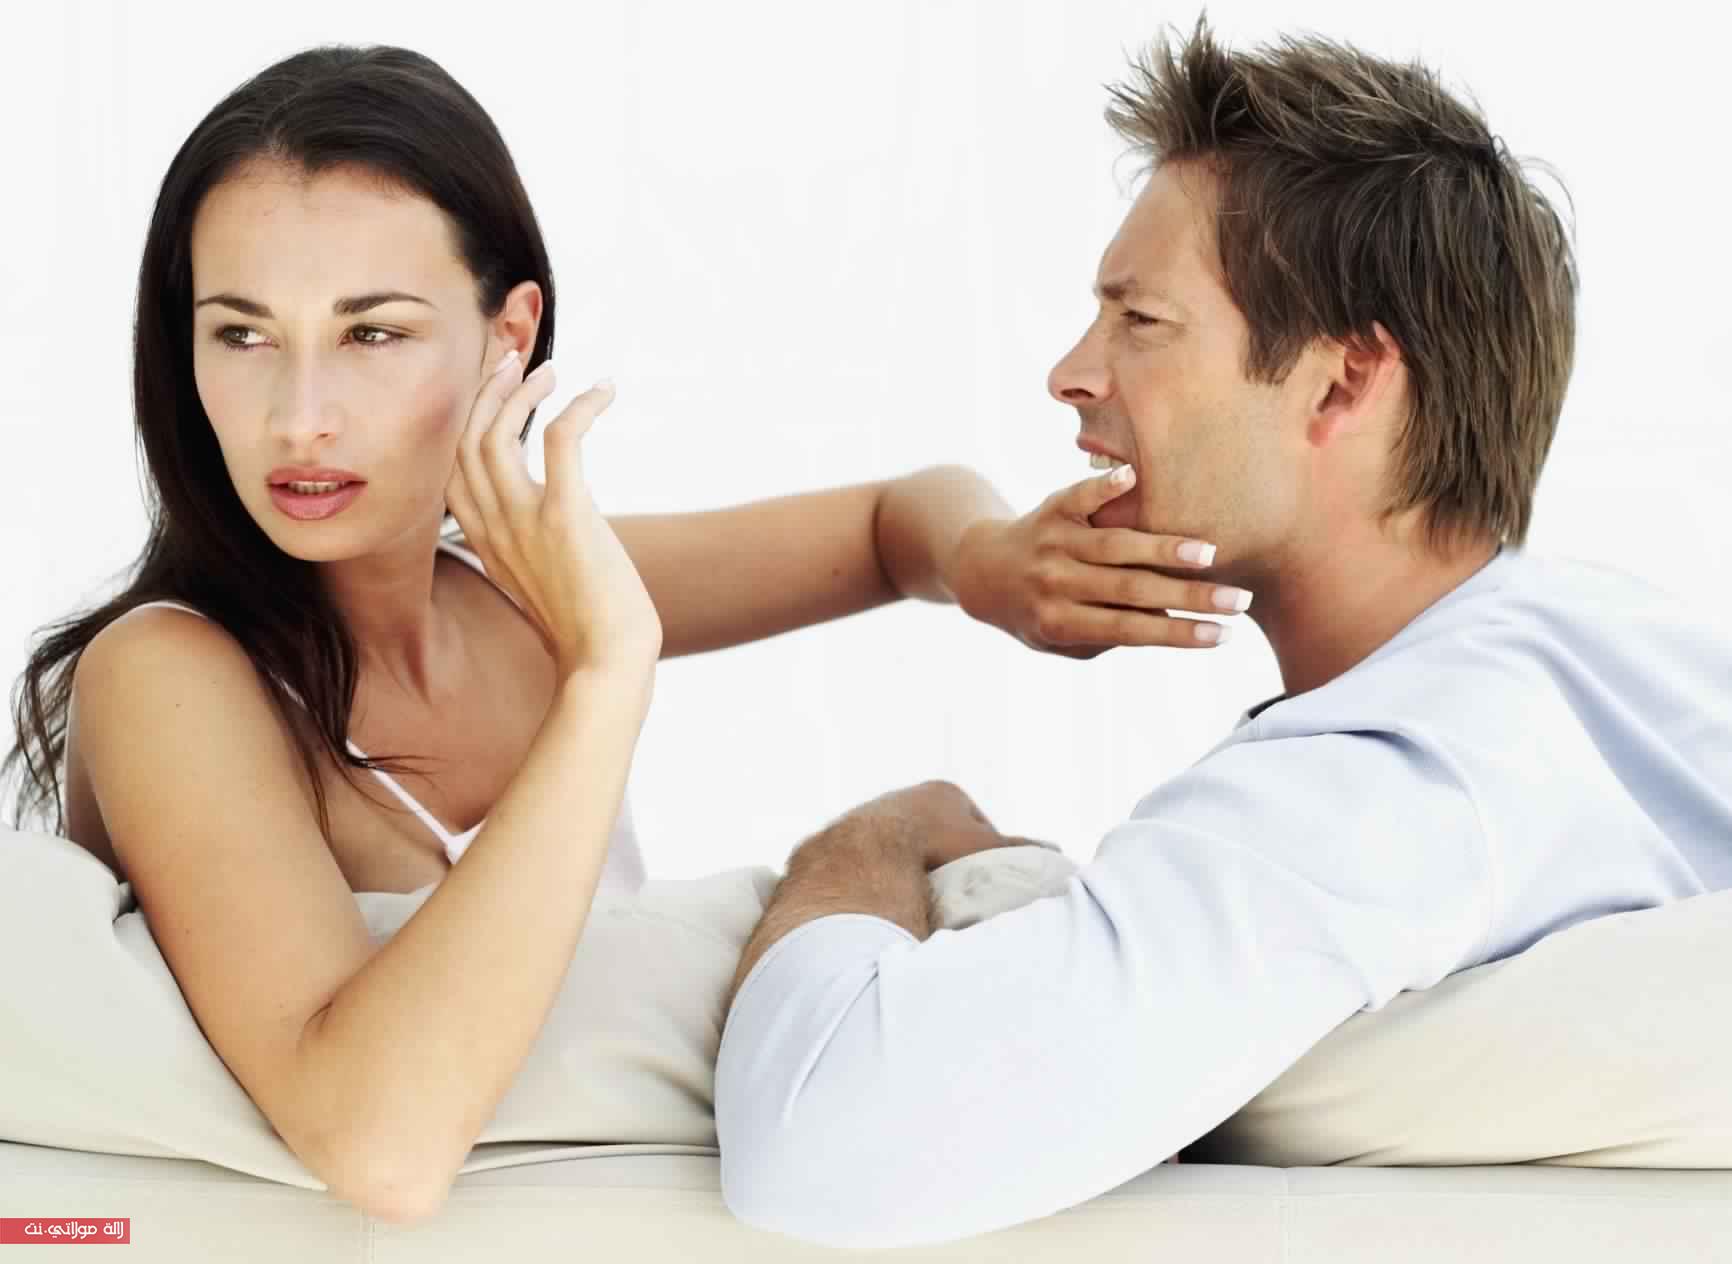 Бабы лучше мужчин. Мужчина и женщина ссорятся. Психология отношений между мужчиной и женщиной. Ссооа мужчины и женщин. Взаимоотношения мужчины и женщины.